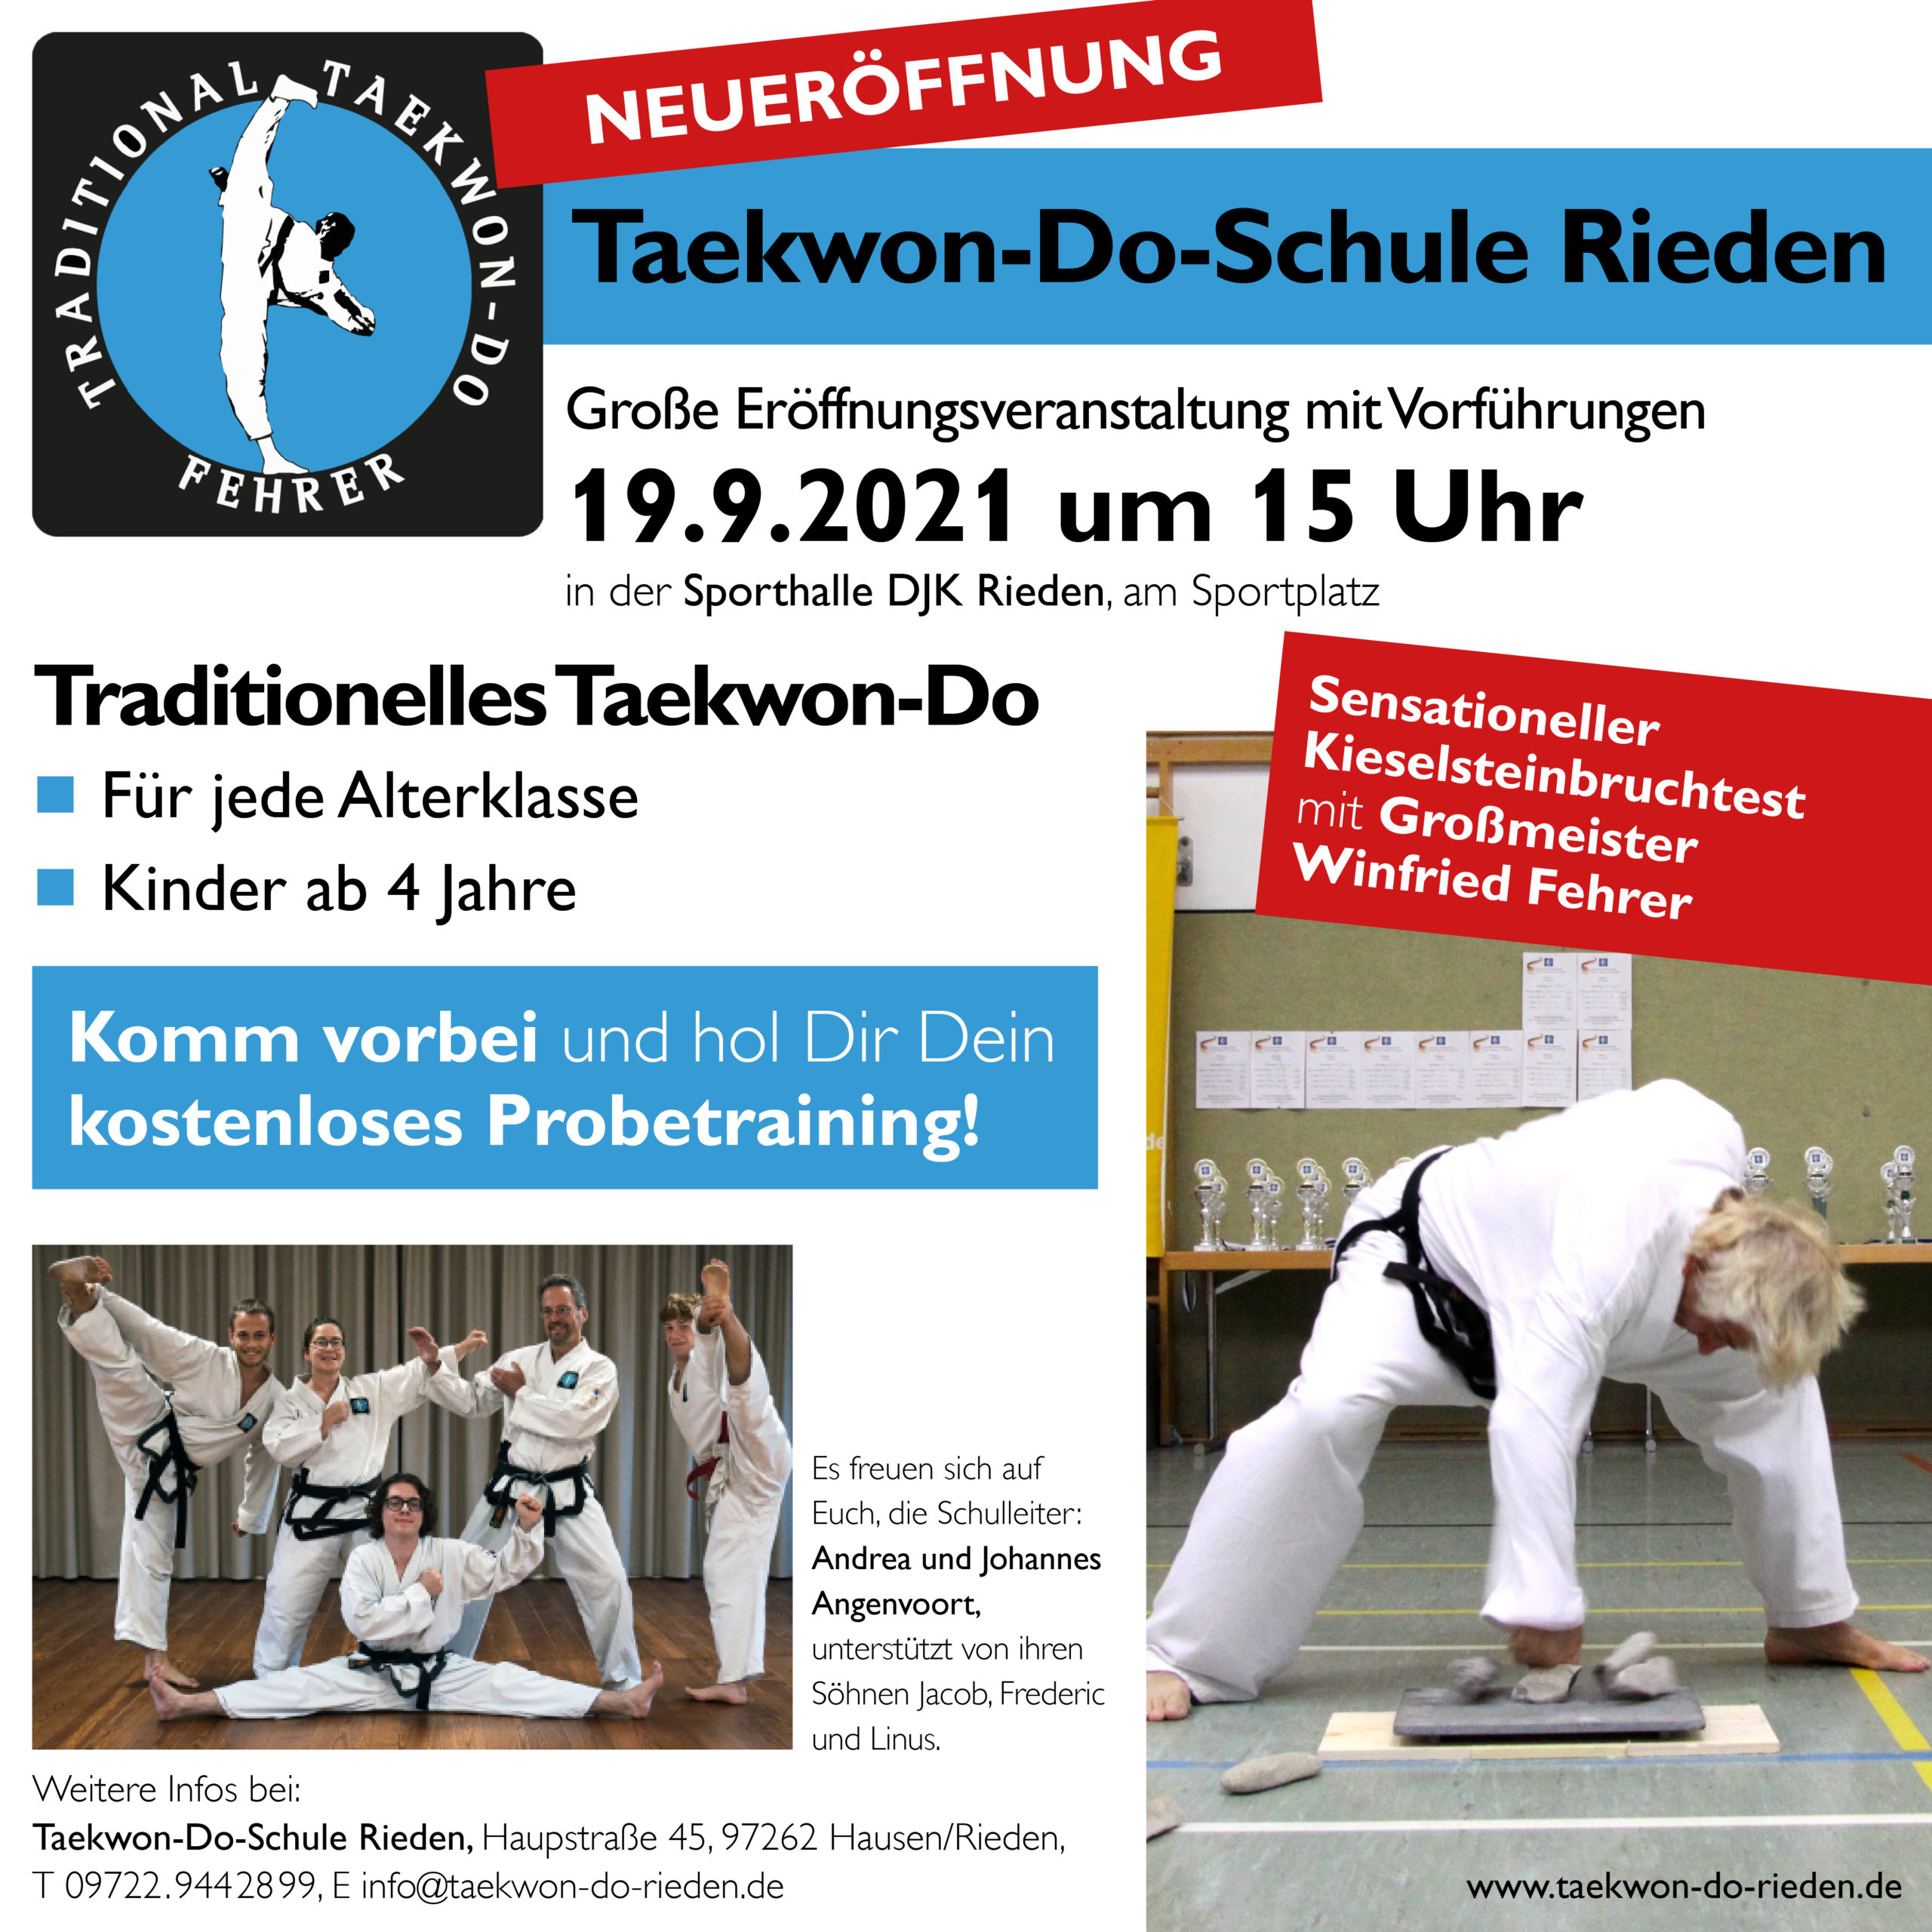 Taekwon-Do Rieden Fehrer Selbstverteidigung Kampfsport Würzburg